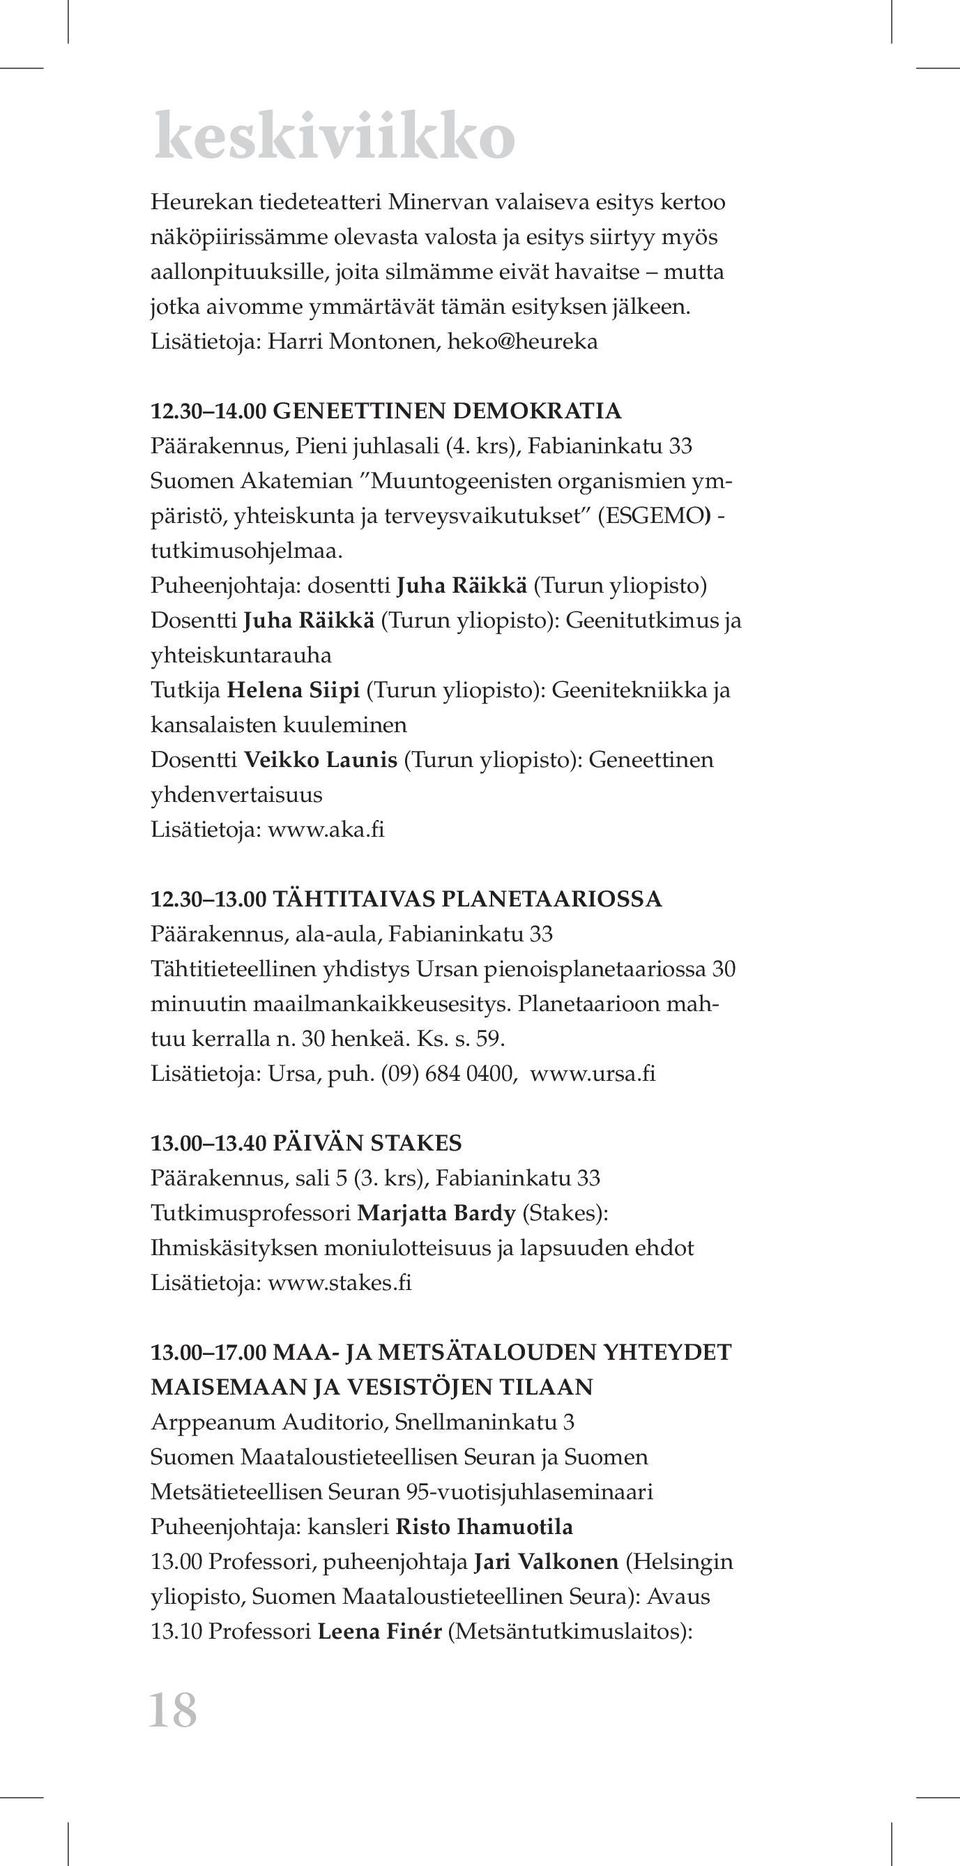 krs), Fabianinkatu 33 Suomen Akatemian Muuntogeenisten organismien ympäristö, yhteiskunta ja terveysvaikutukset (ESGEMO) - tutkimusohjelmaa.